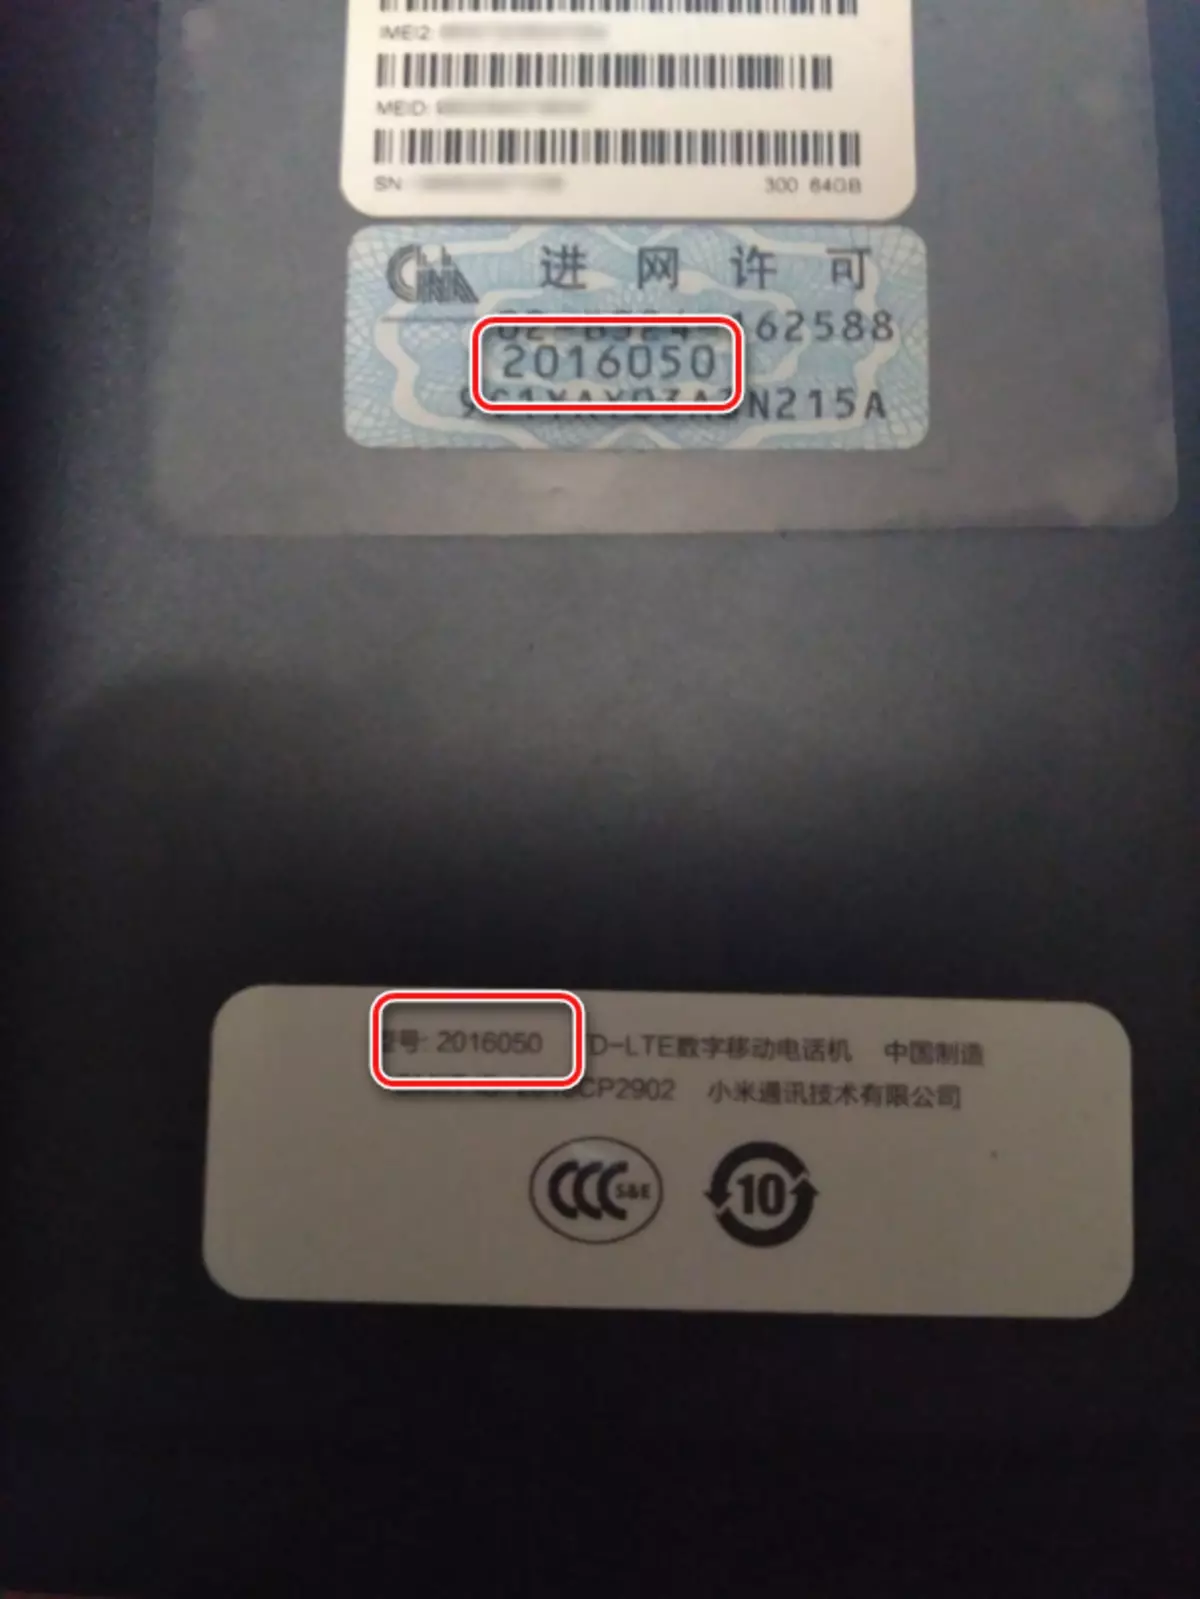 Xiaomi Redmi Nota 4 Definisie van die weergawe van die plakker op die smartphone-behuising